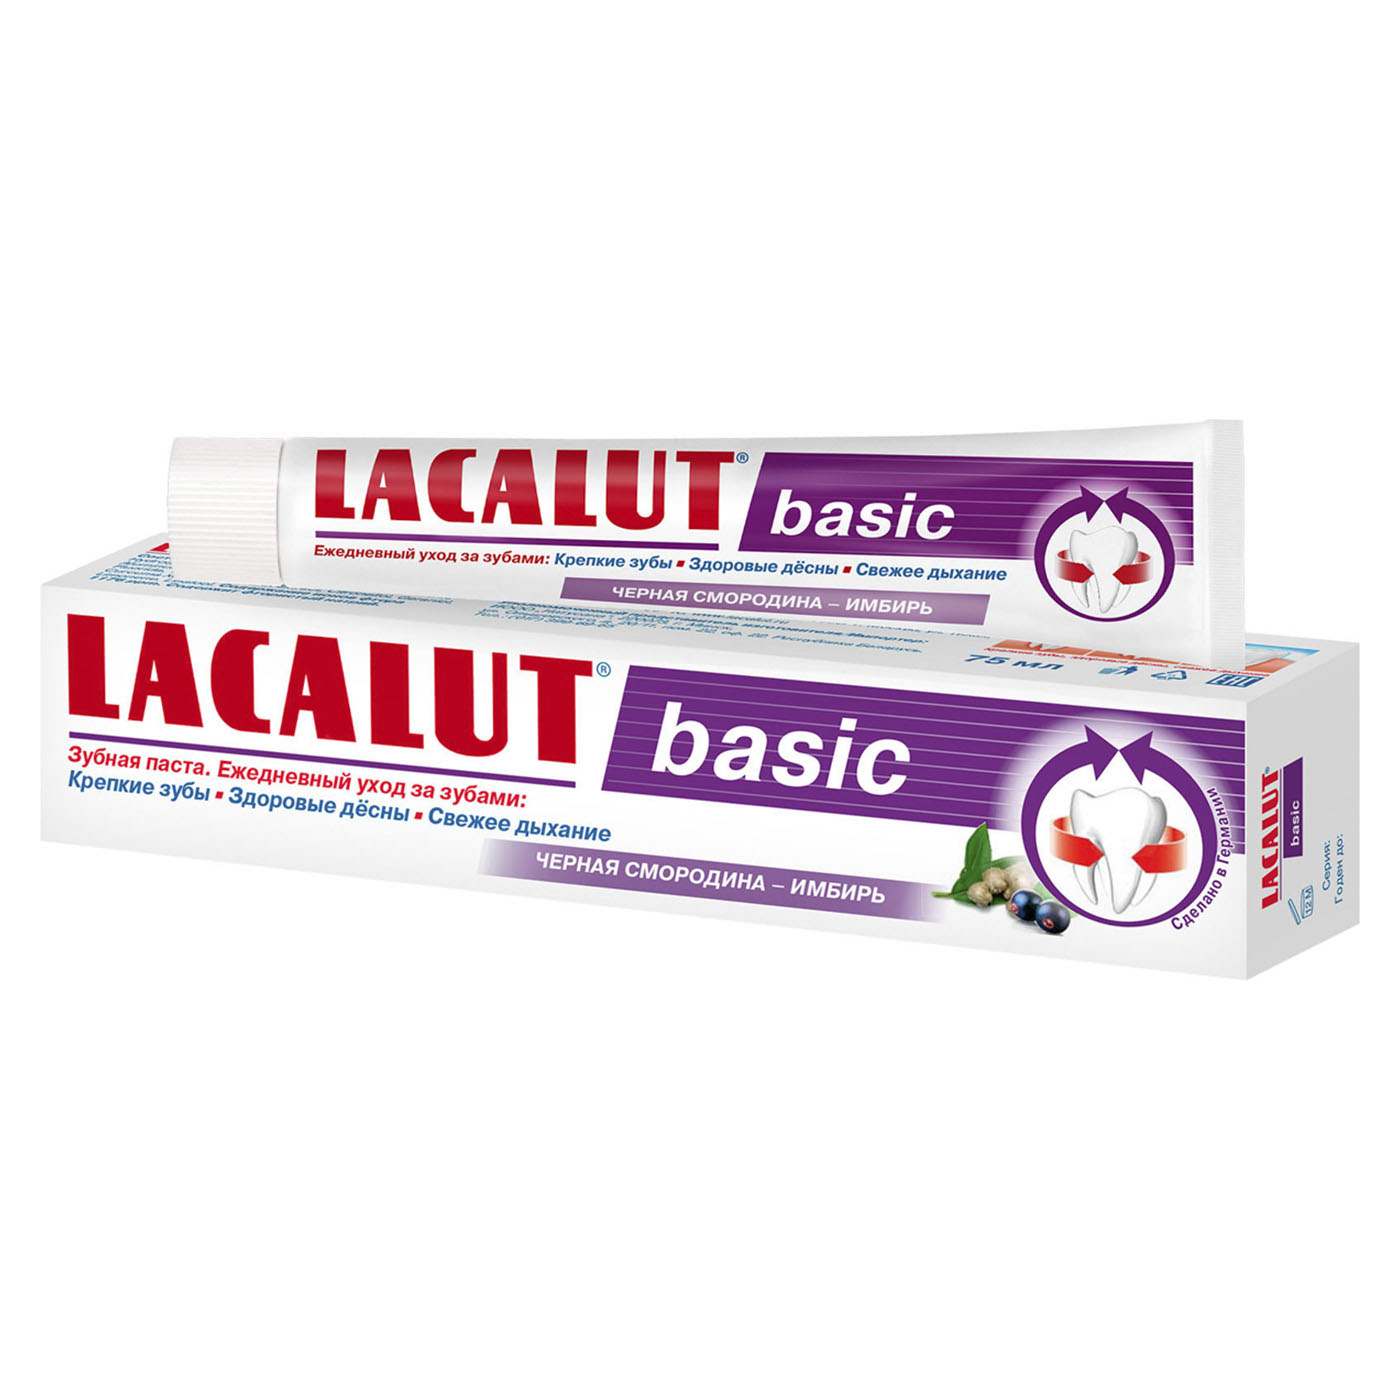 Lacalut Зубная паста Бейсик черная смородина-имбирь (Lacalut, Зубные пасты)